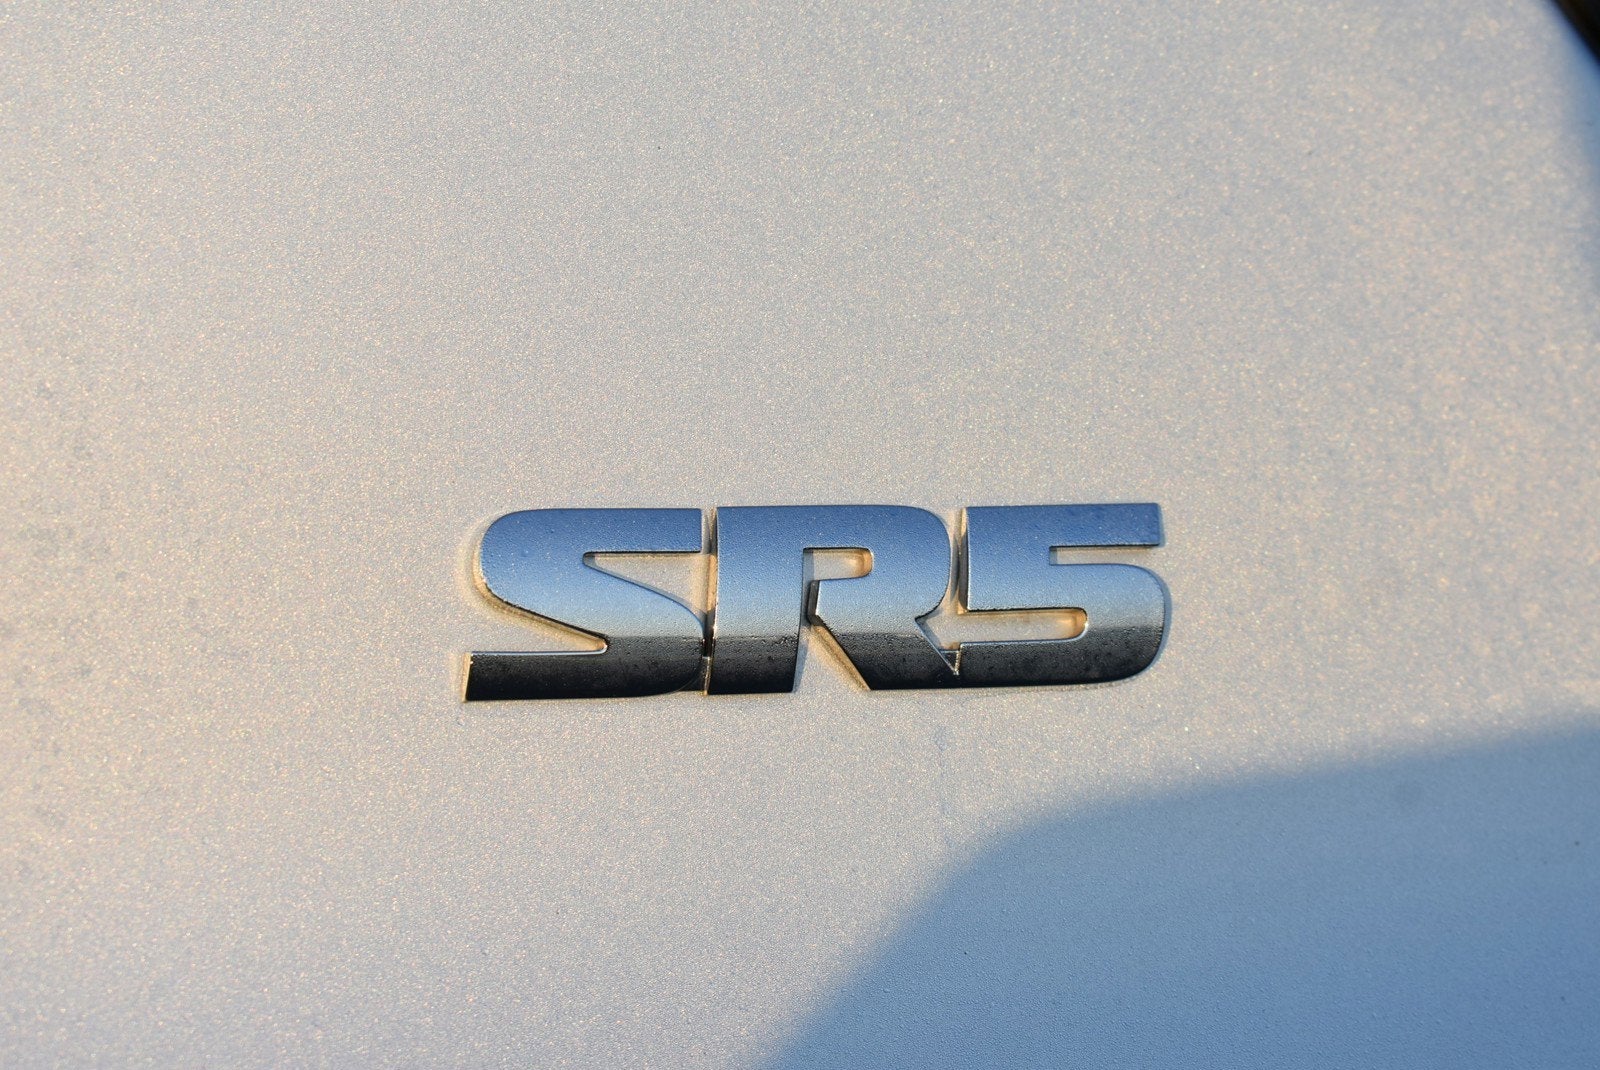 2010 Toyota 4Runner SR5